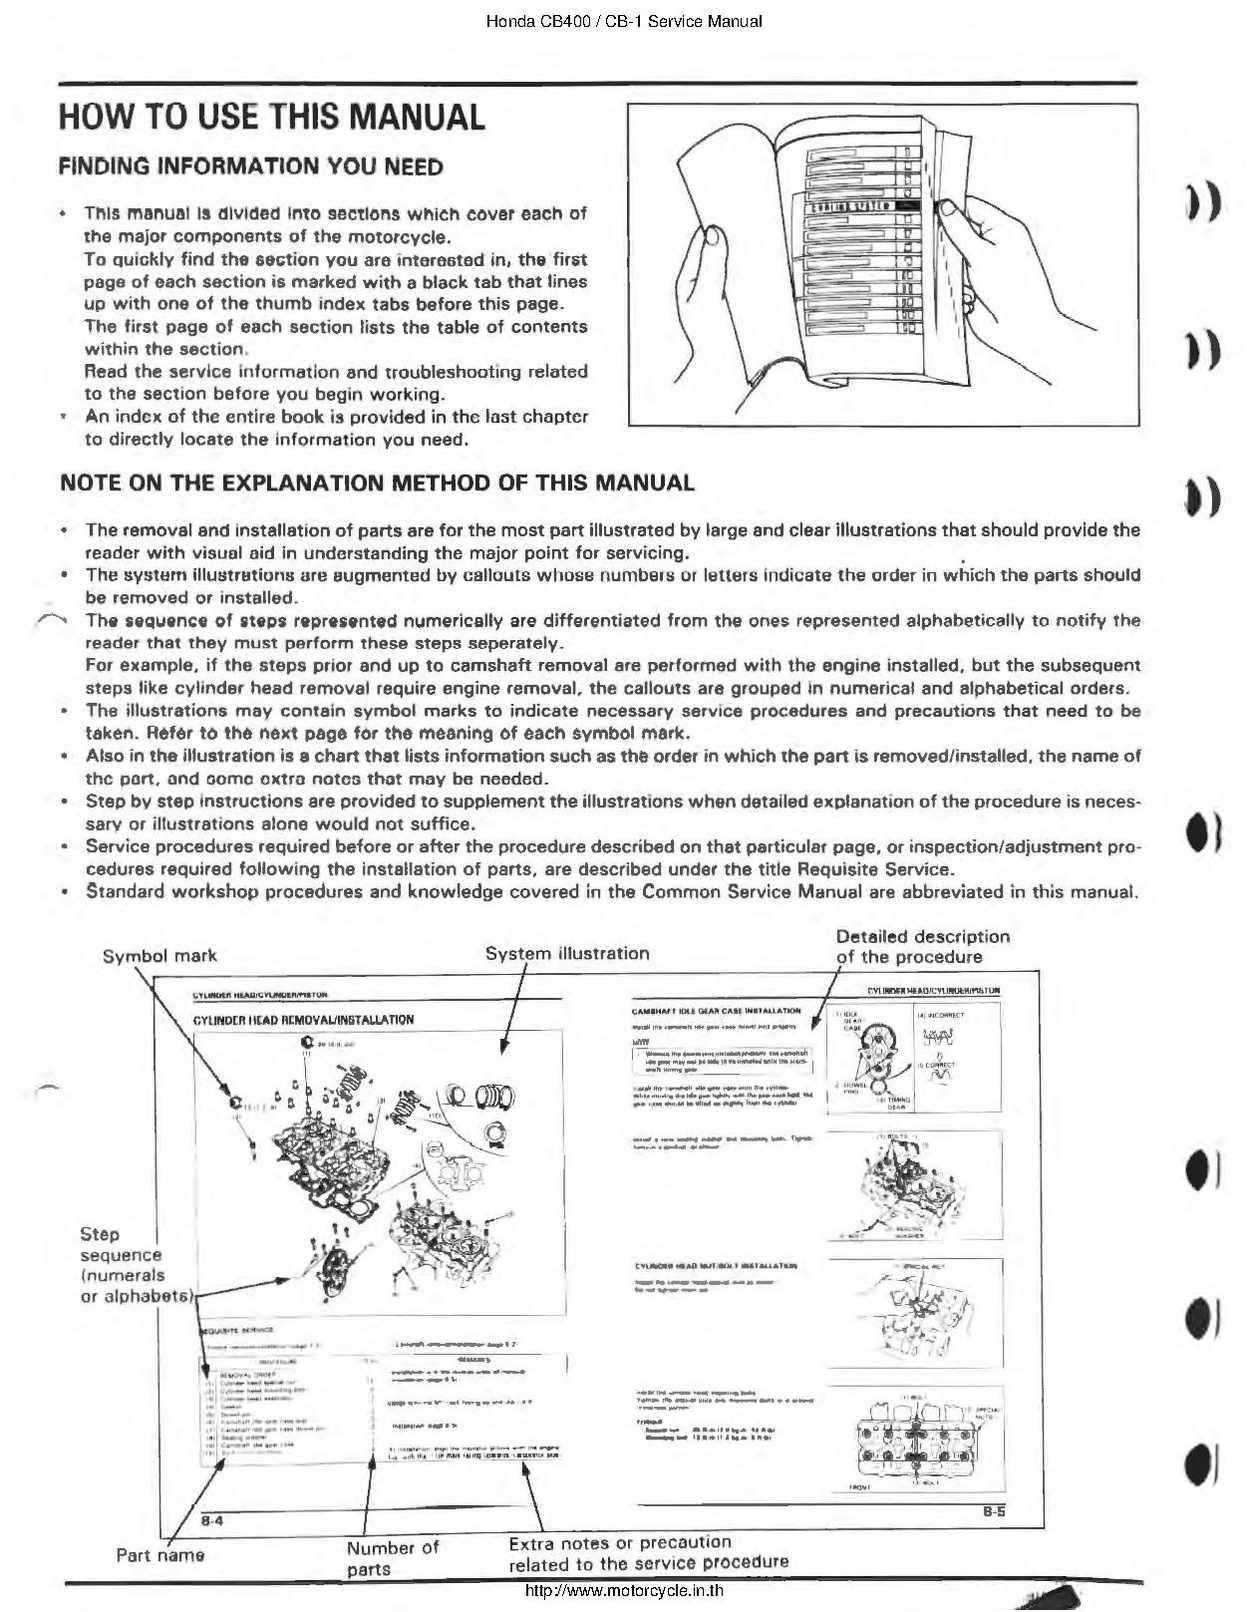 File:Honda CB400F CB-1 1989 Service Manual English.pdf